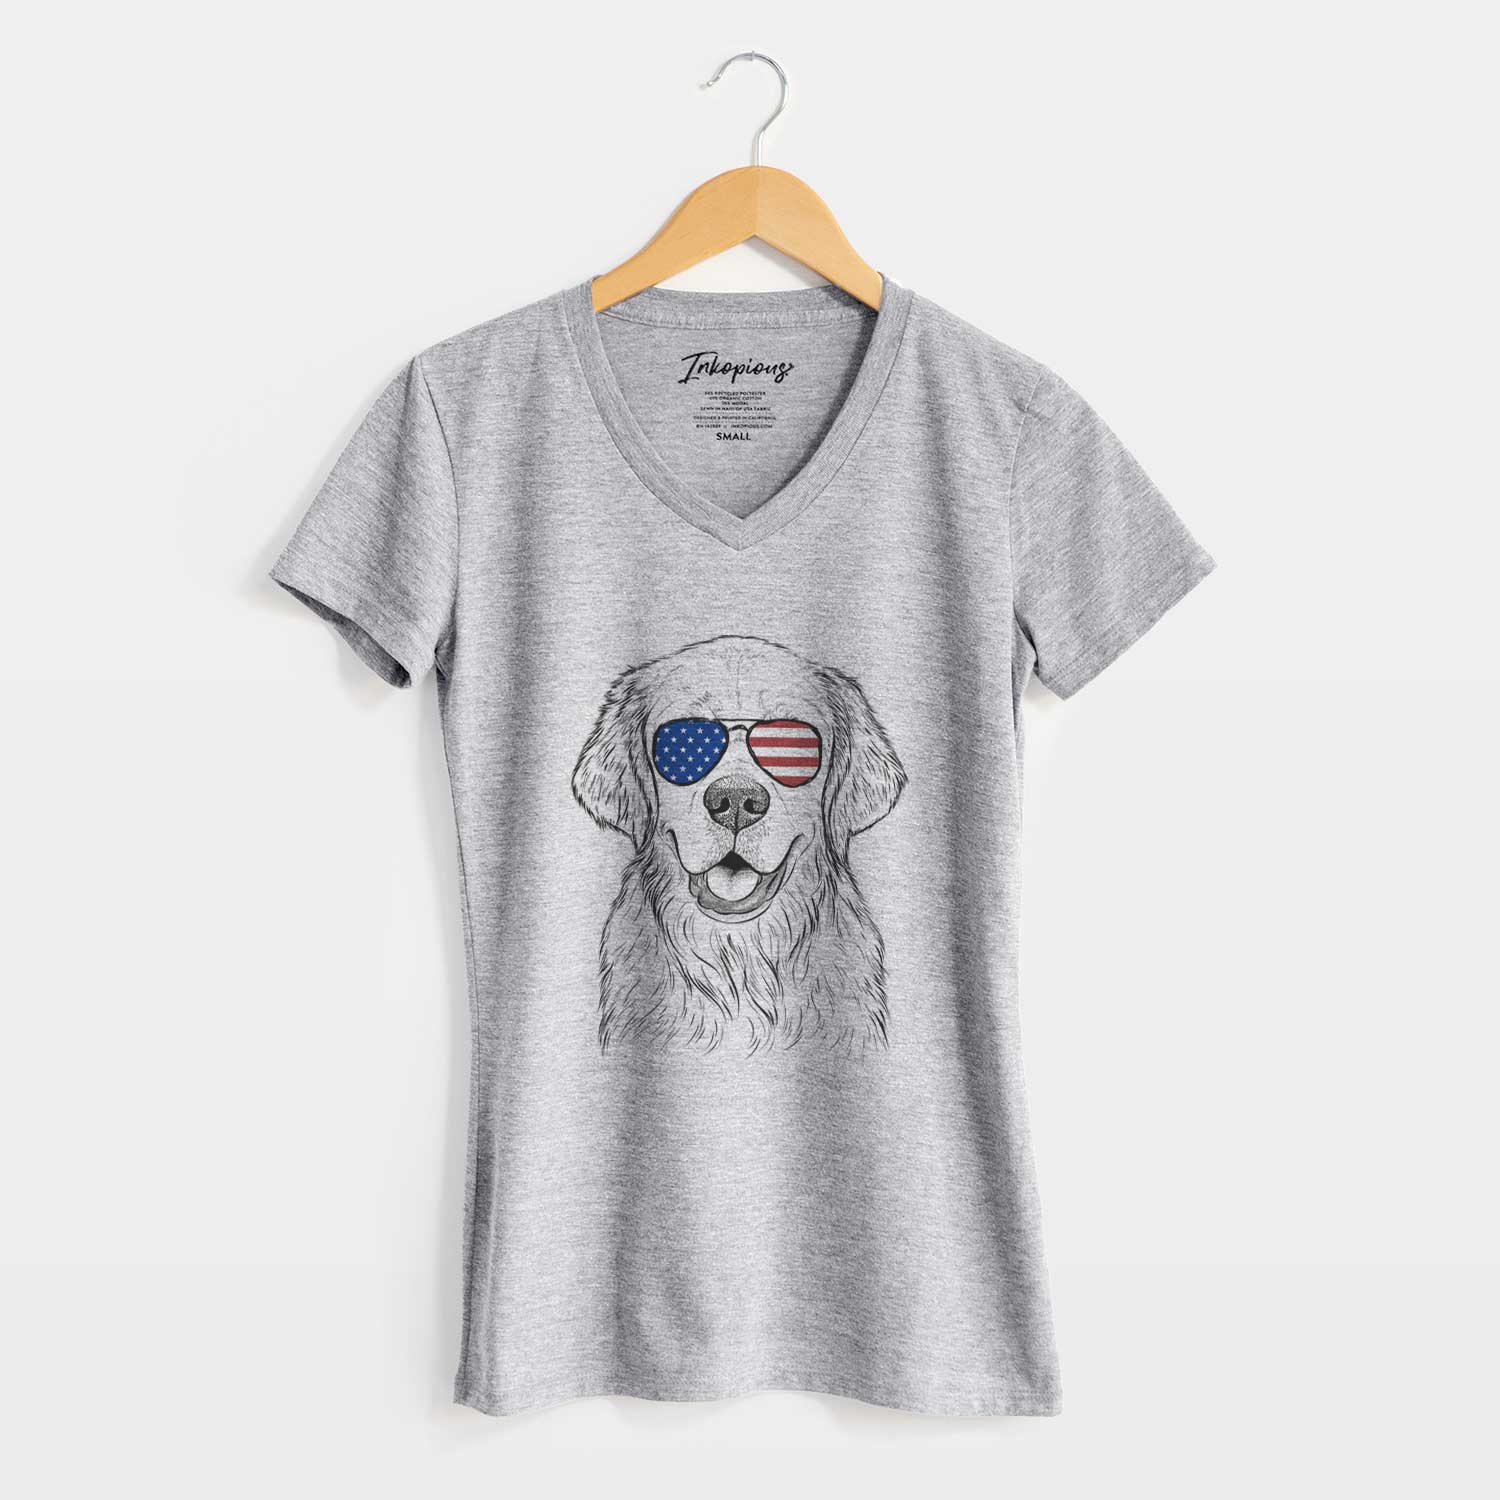 USA Emma the Golden Retriever - Women's Perfect V-neck Shirt